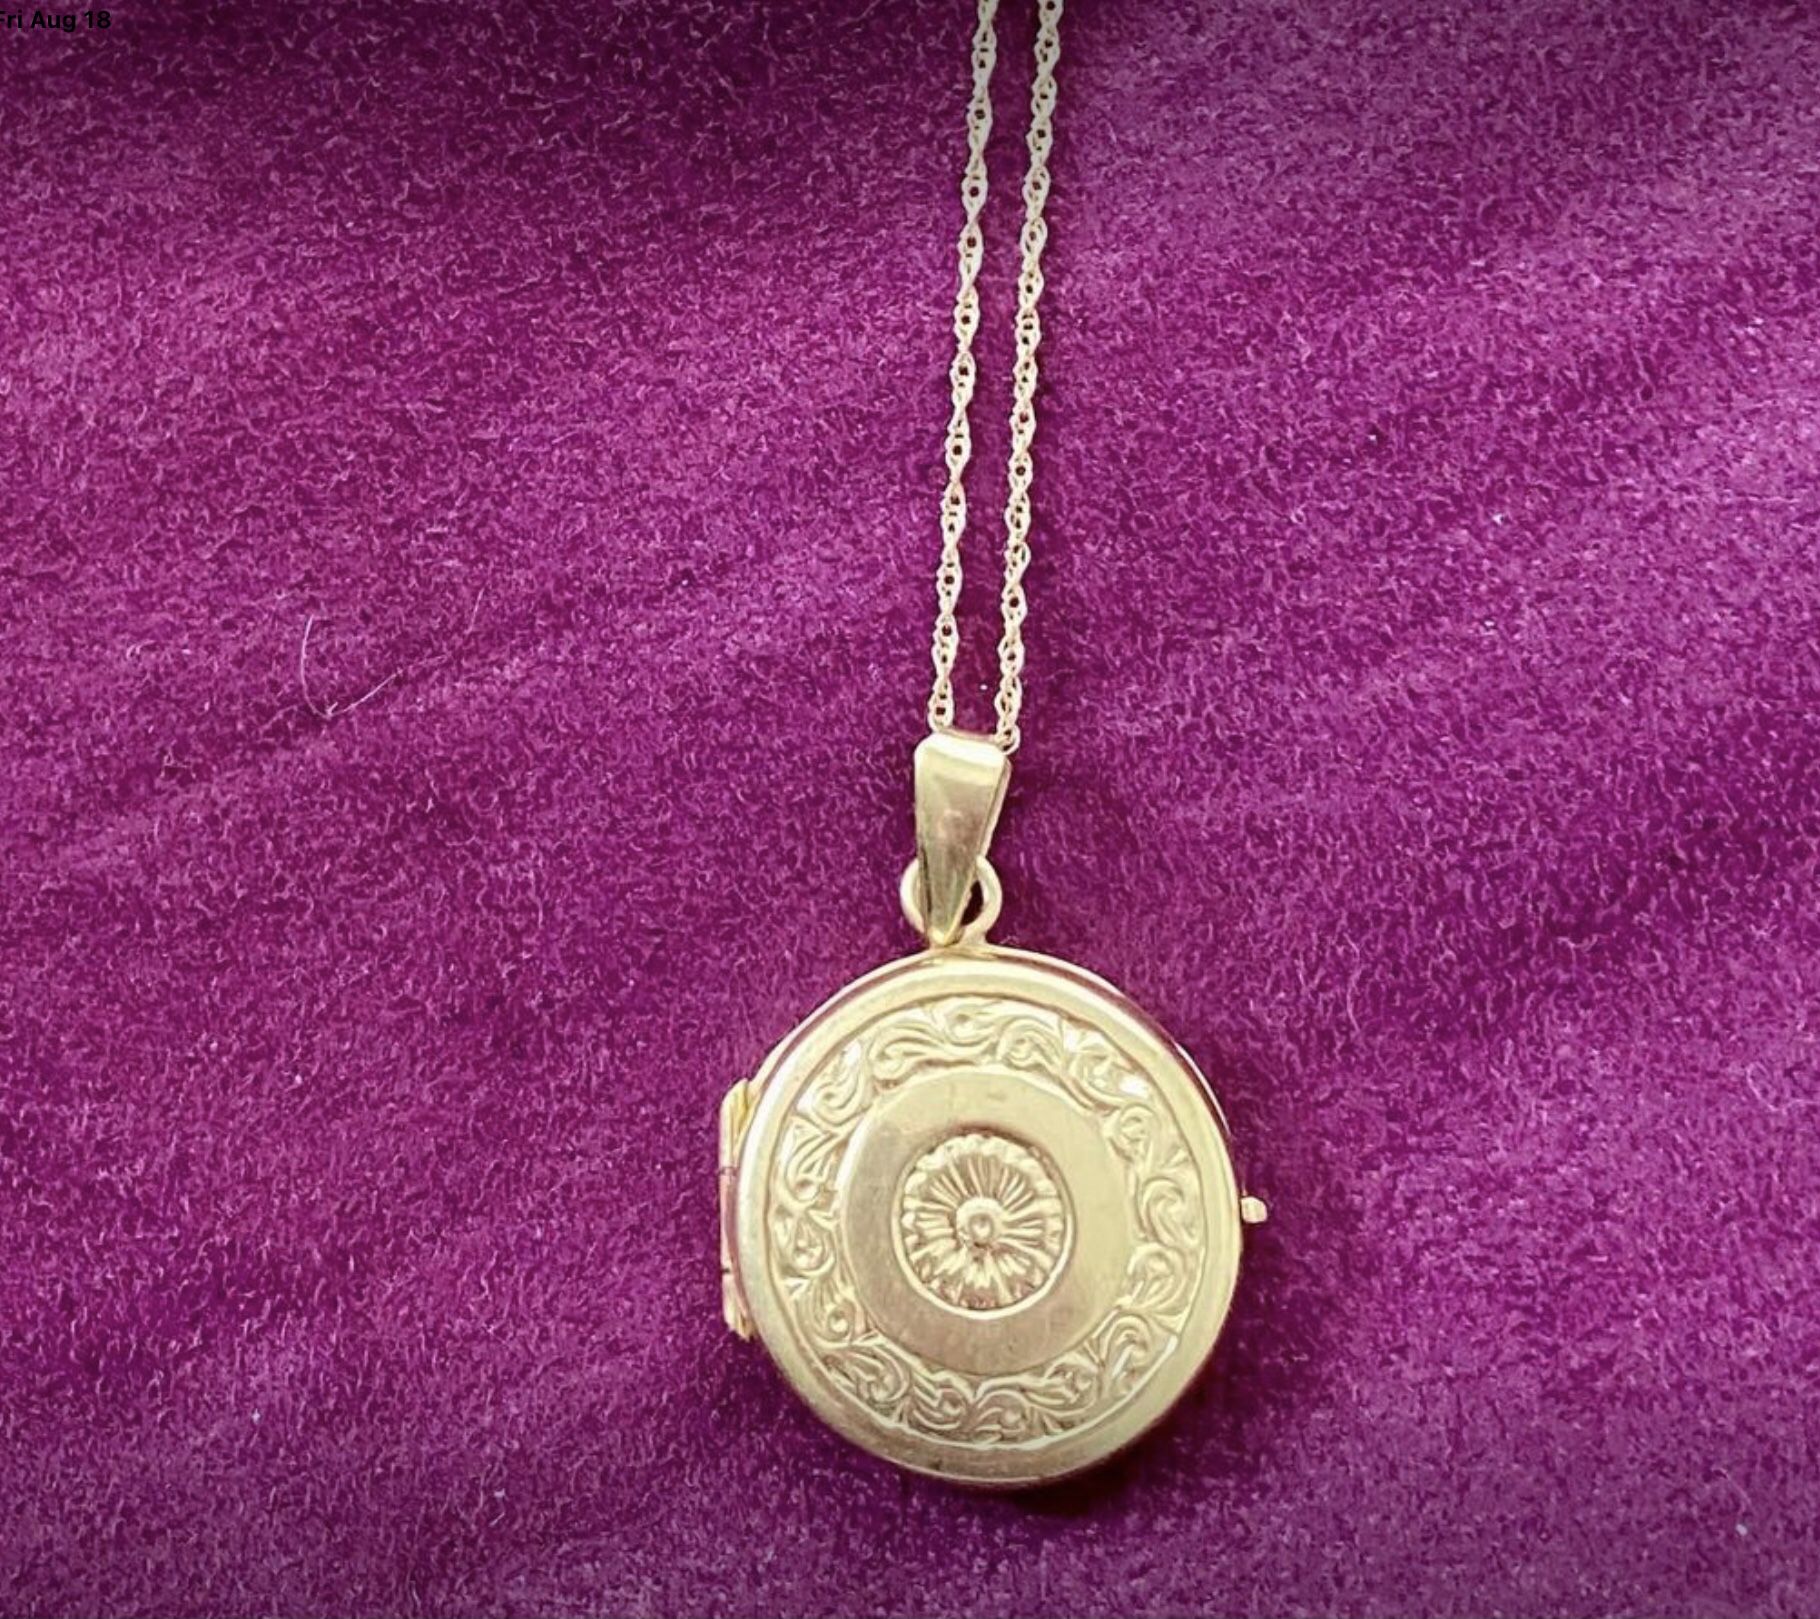 Vintage Engraved Monogram Locket Pendant Necklace 10k Gold for Sale in  Garner, NC - OfferUp